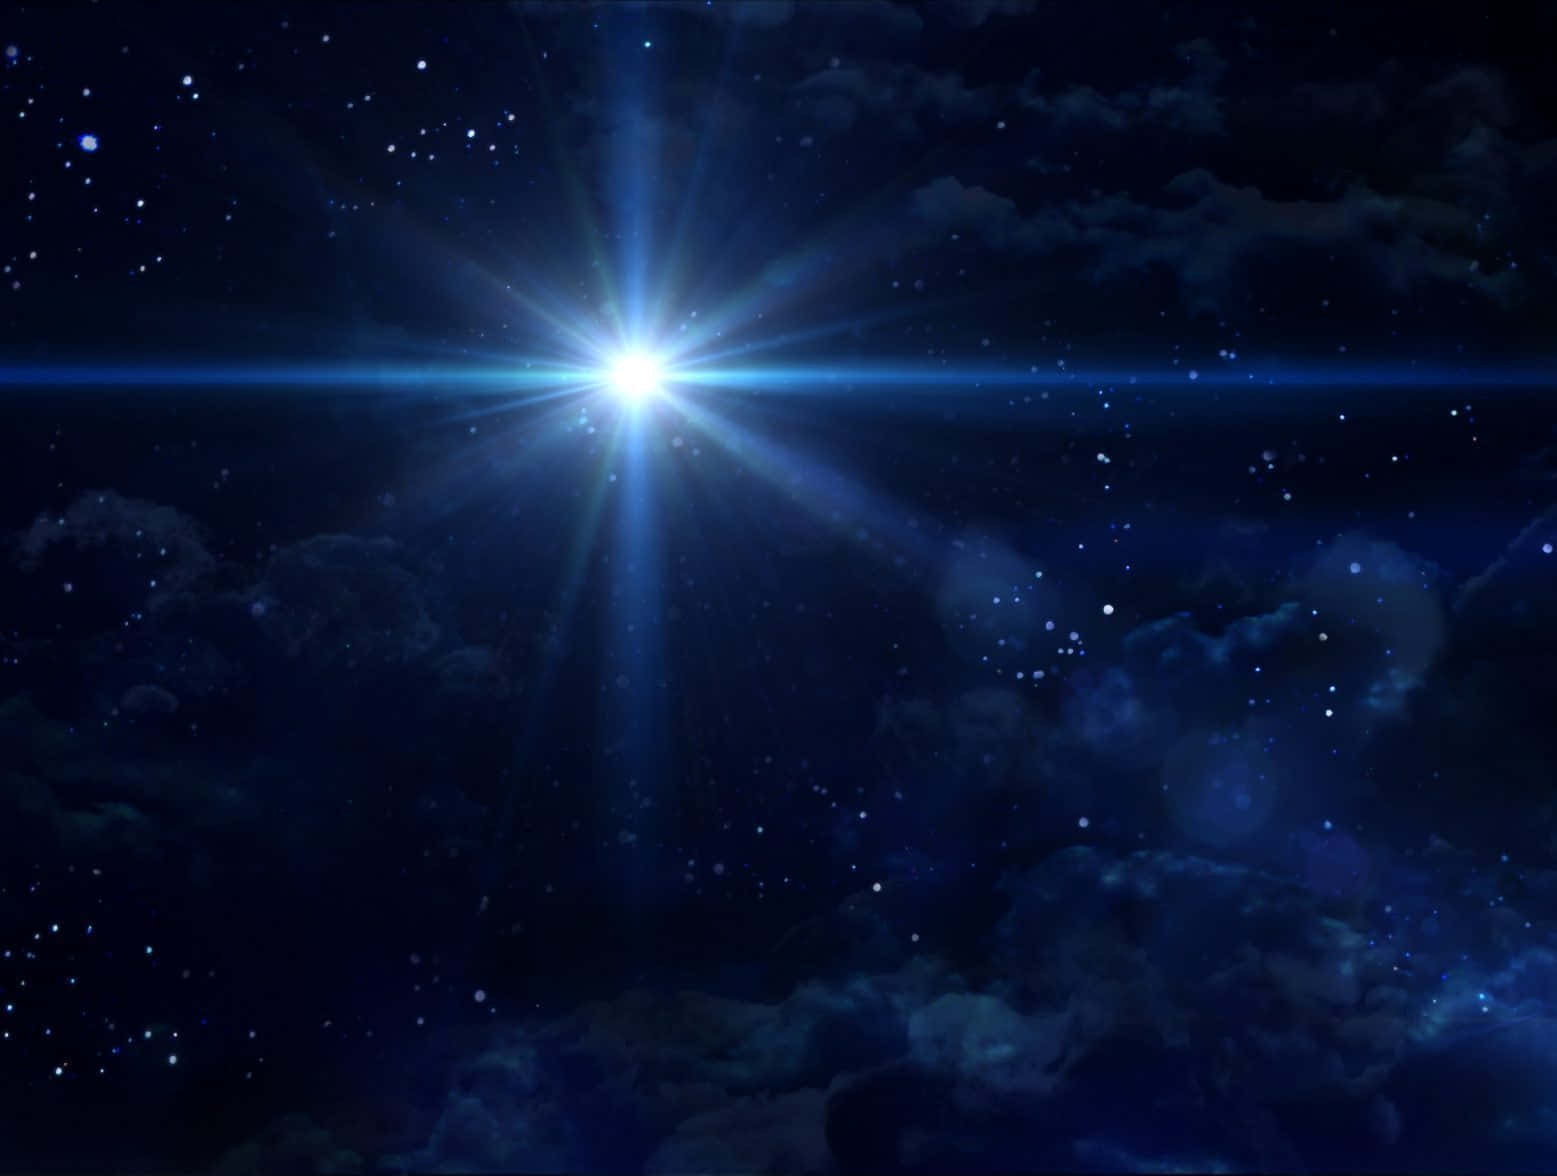 Stjernebilleder glimter i et dybt nattehimmel.